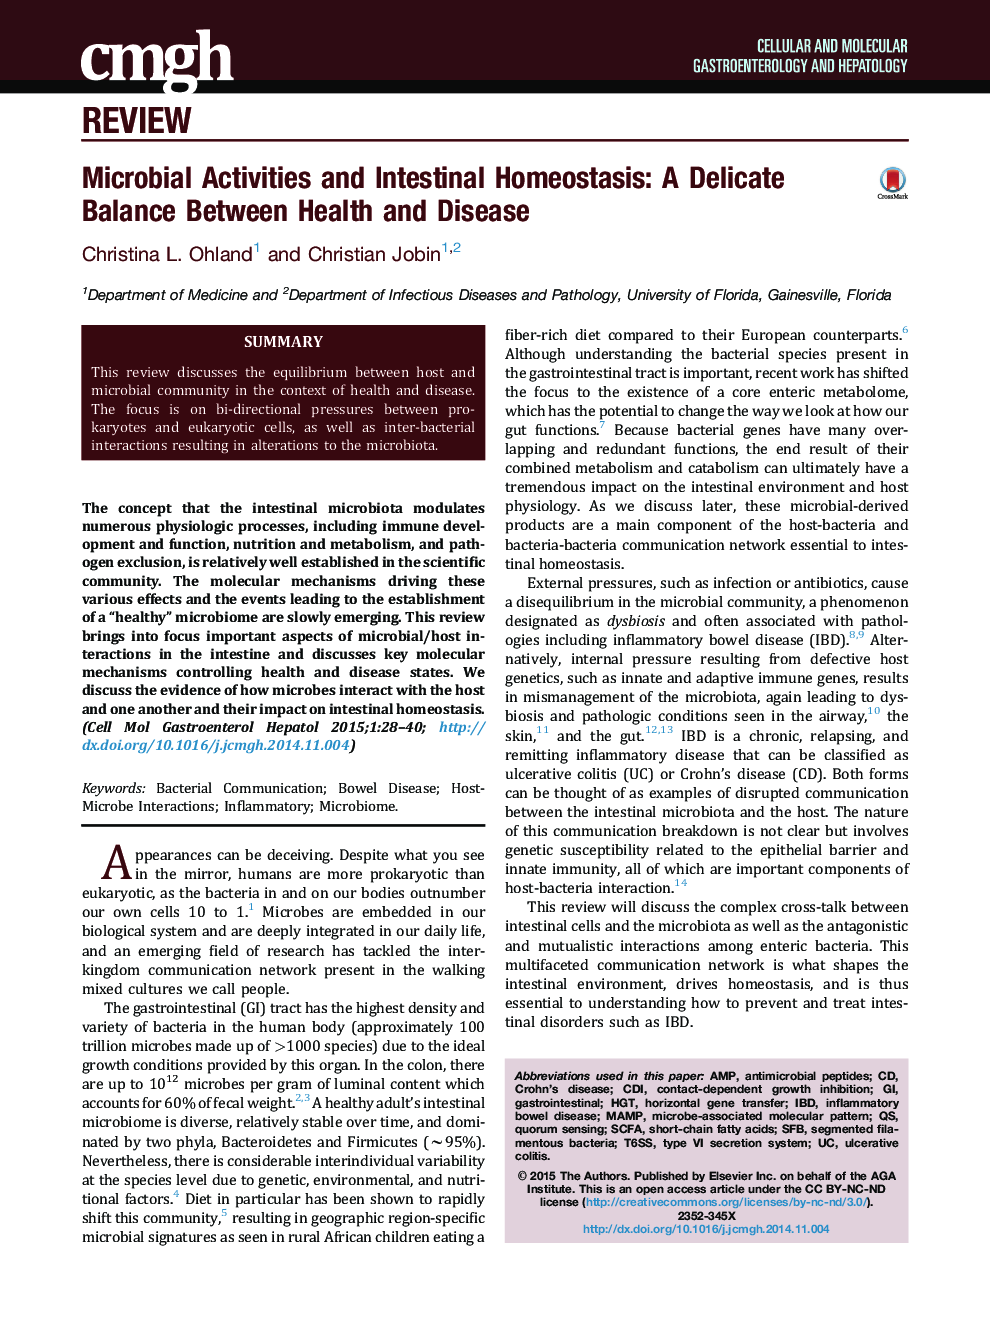 فعالیت های میکروبی و هوموستاز روده: تعادل ظریف بین سلامت و بیماری 